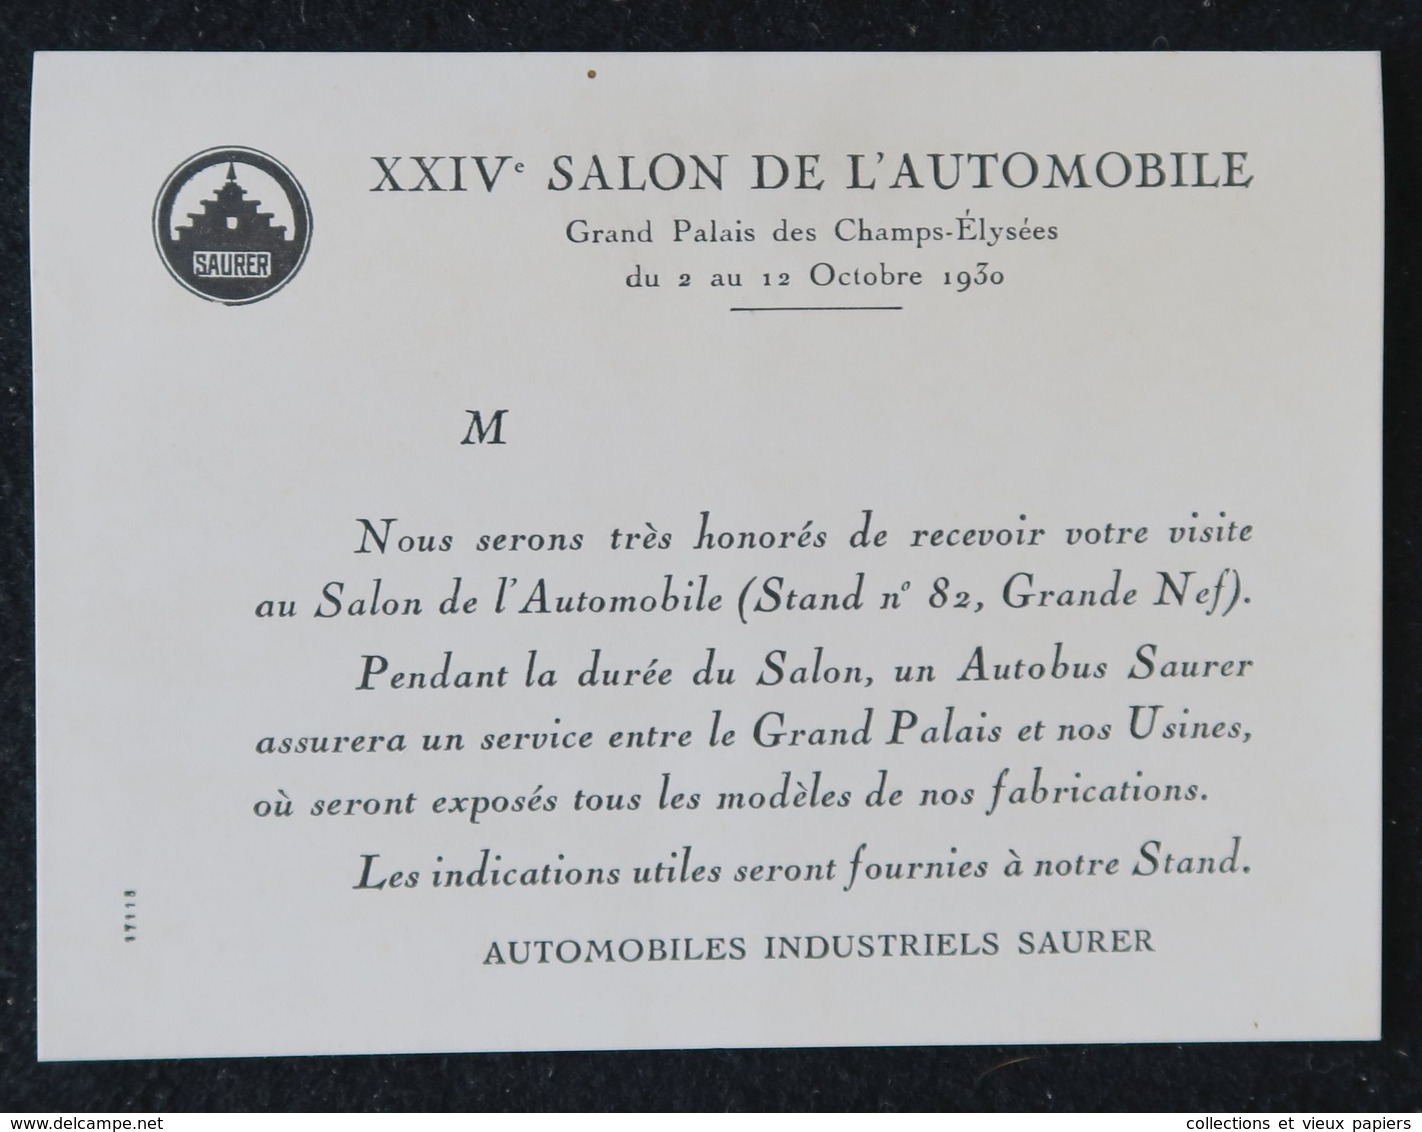 Automobiles Industriels SAURER Suresnes 1930 - Invitation XXIVème Salon De L'automobile - Automobile